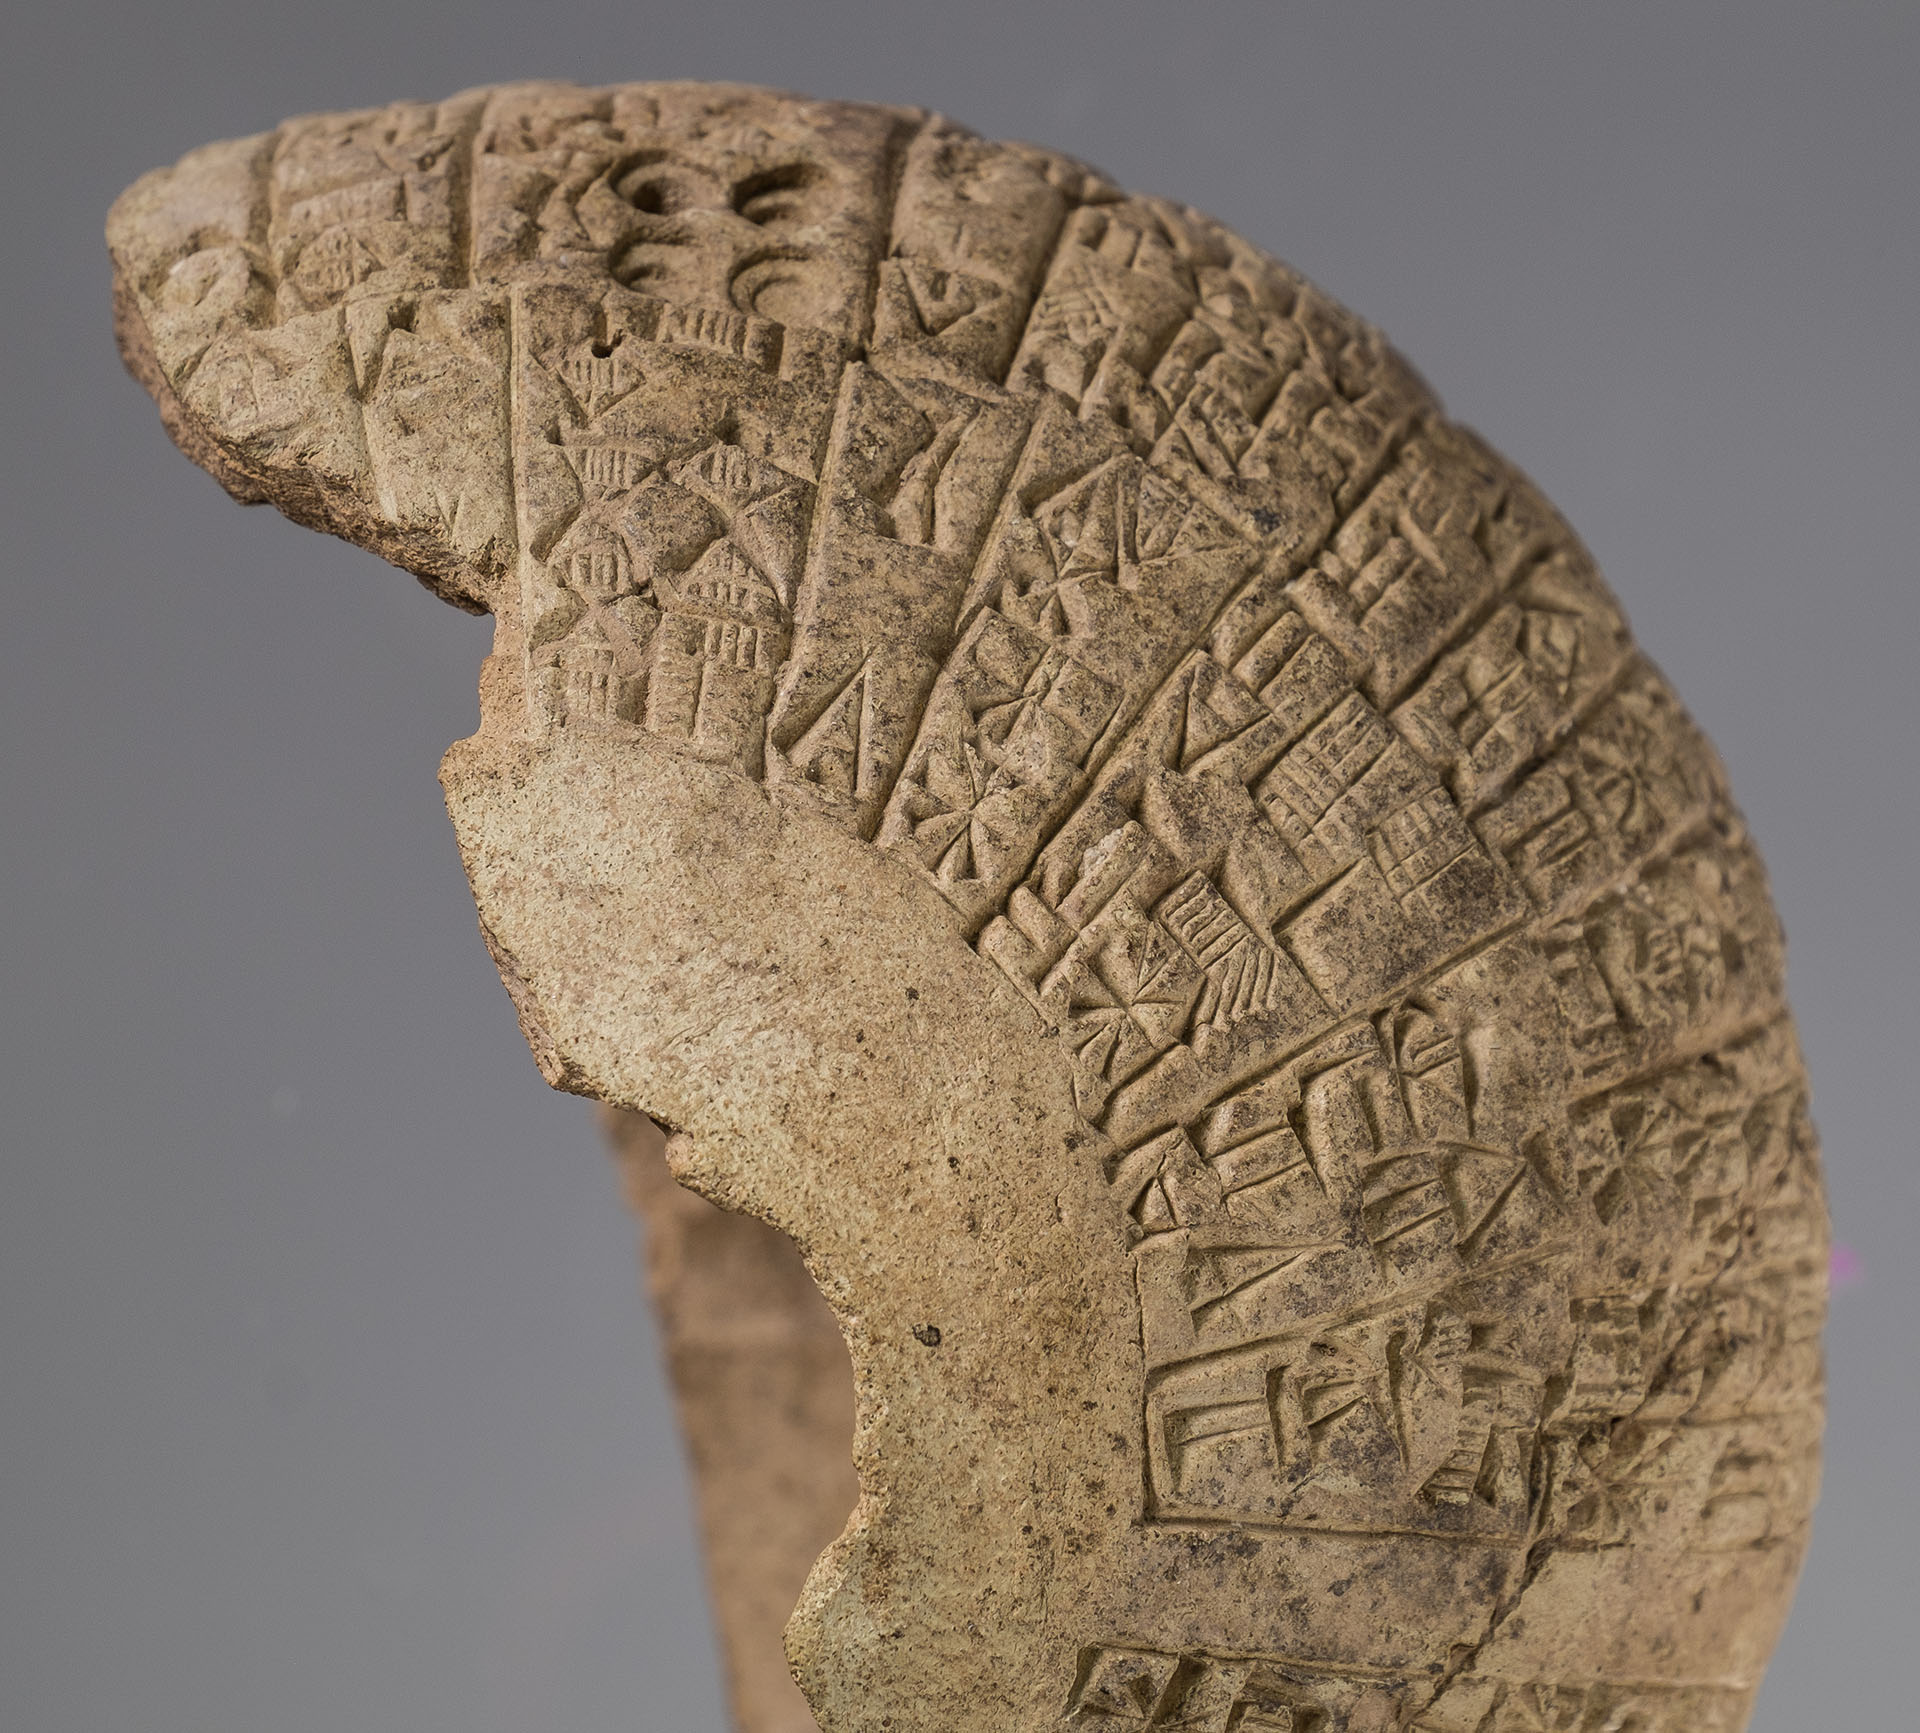 En-metena 1 cuneifom text Sulimaniey Iraq